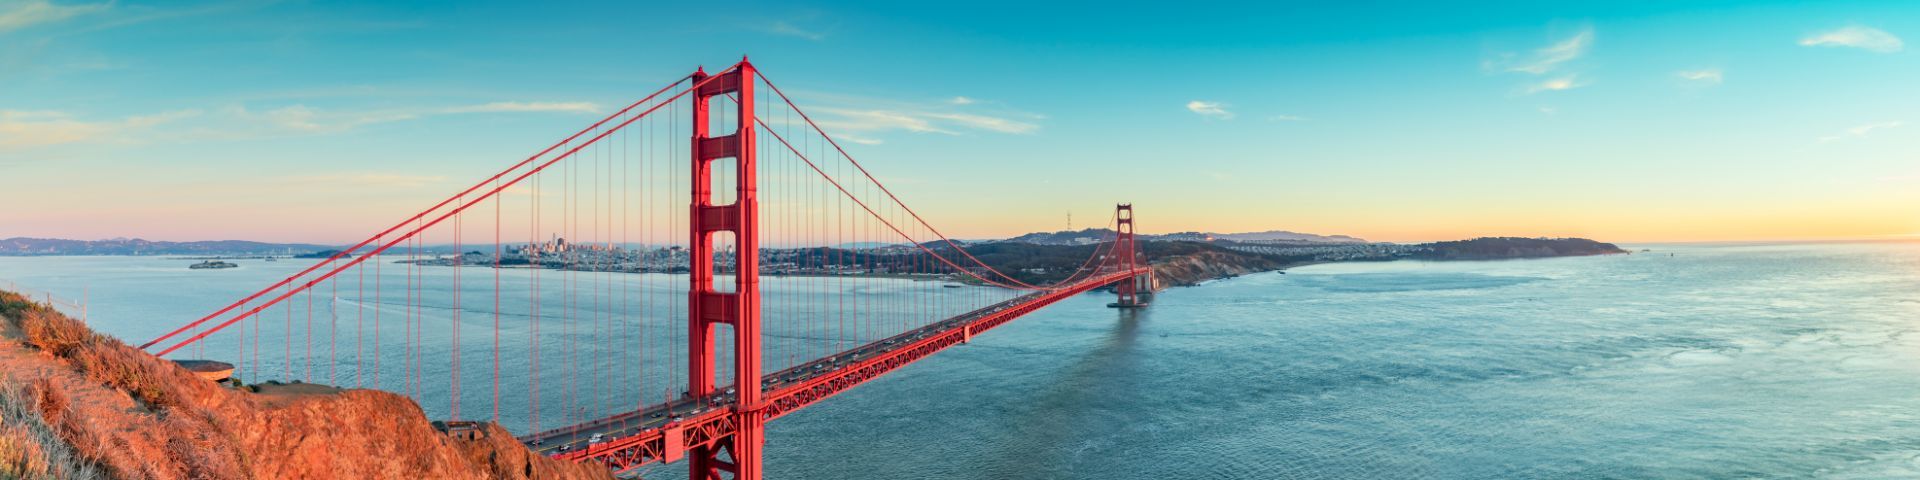 Golden Gate Bridge in San Francisco bei einer Nordamerika Reise mit sz-Reisen